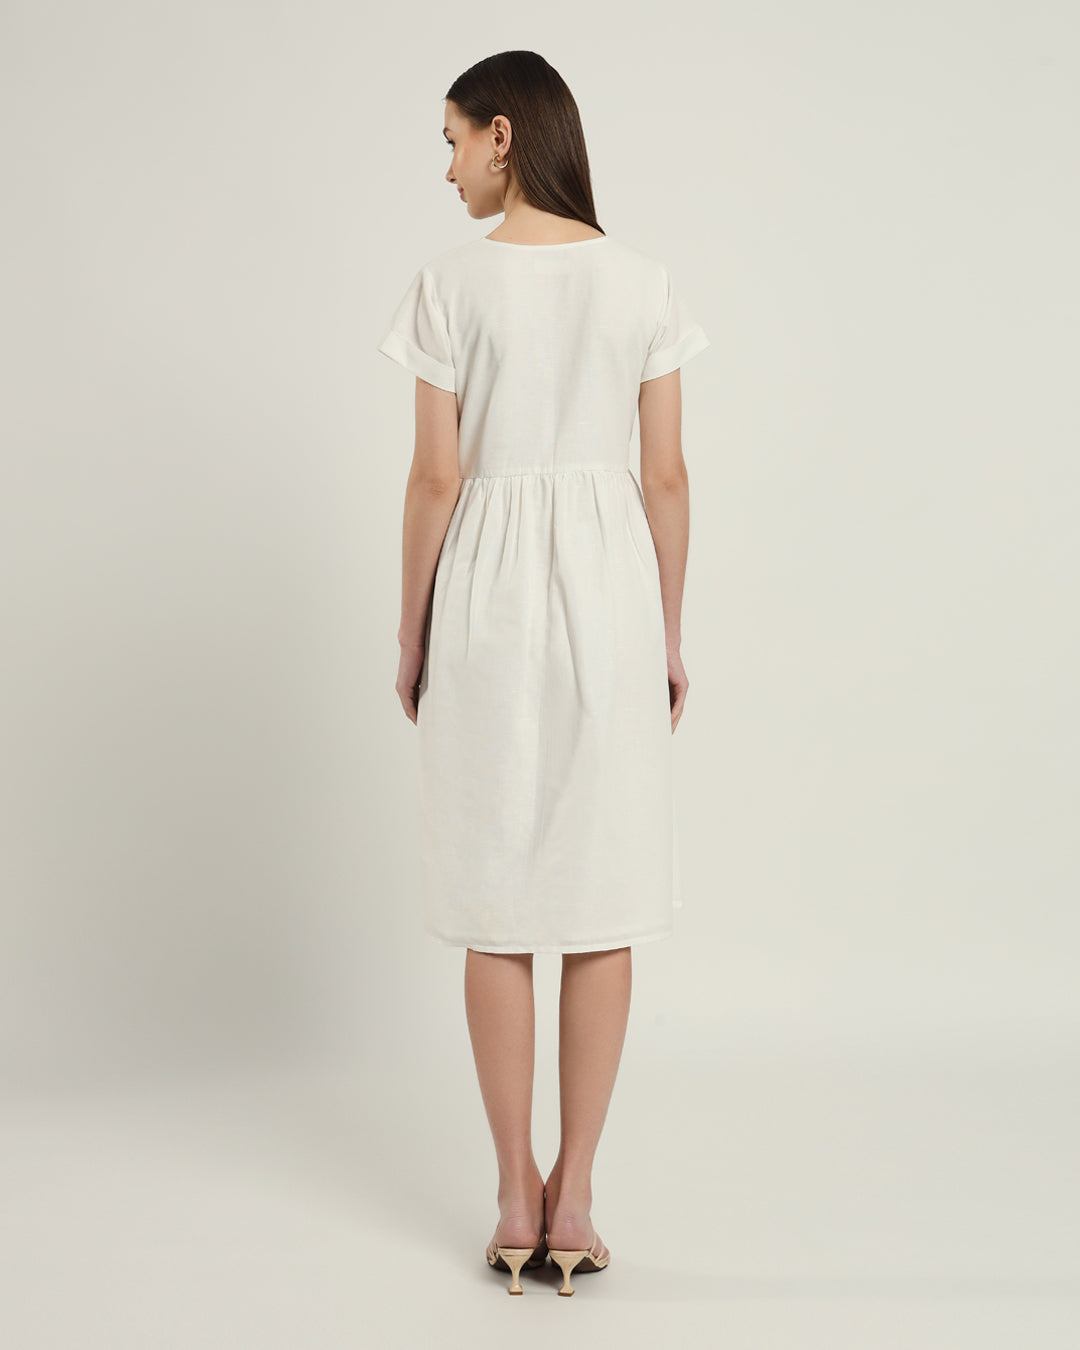 The Valence Daisy White Linen Dress